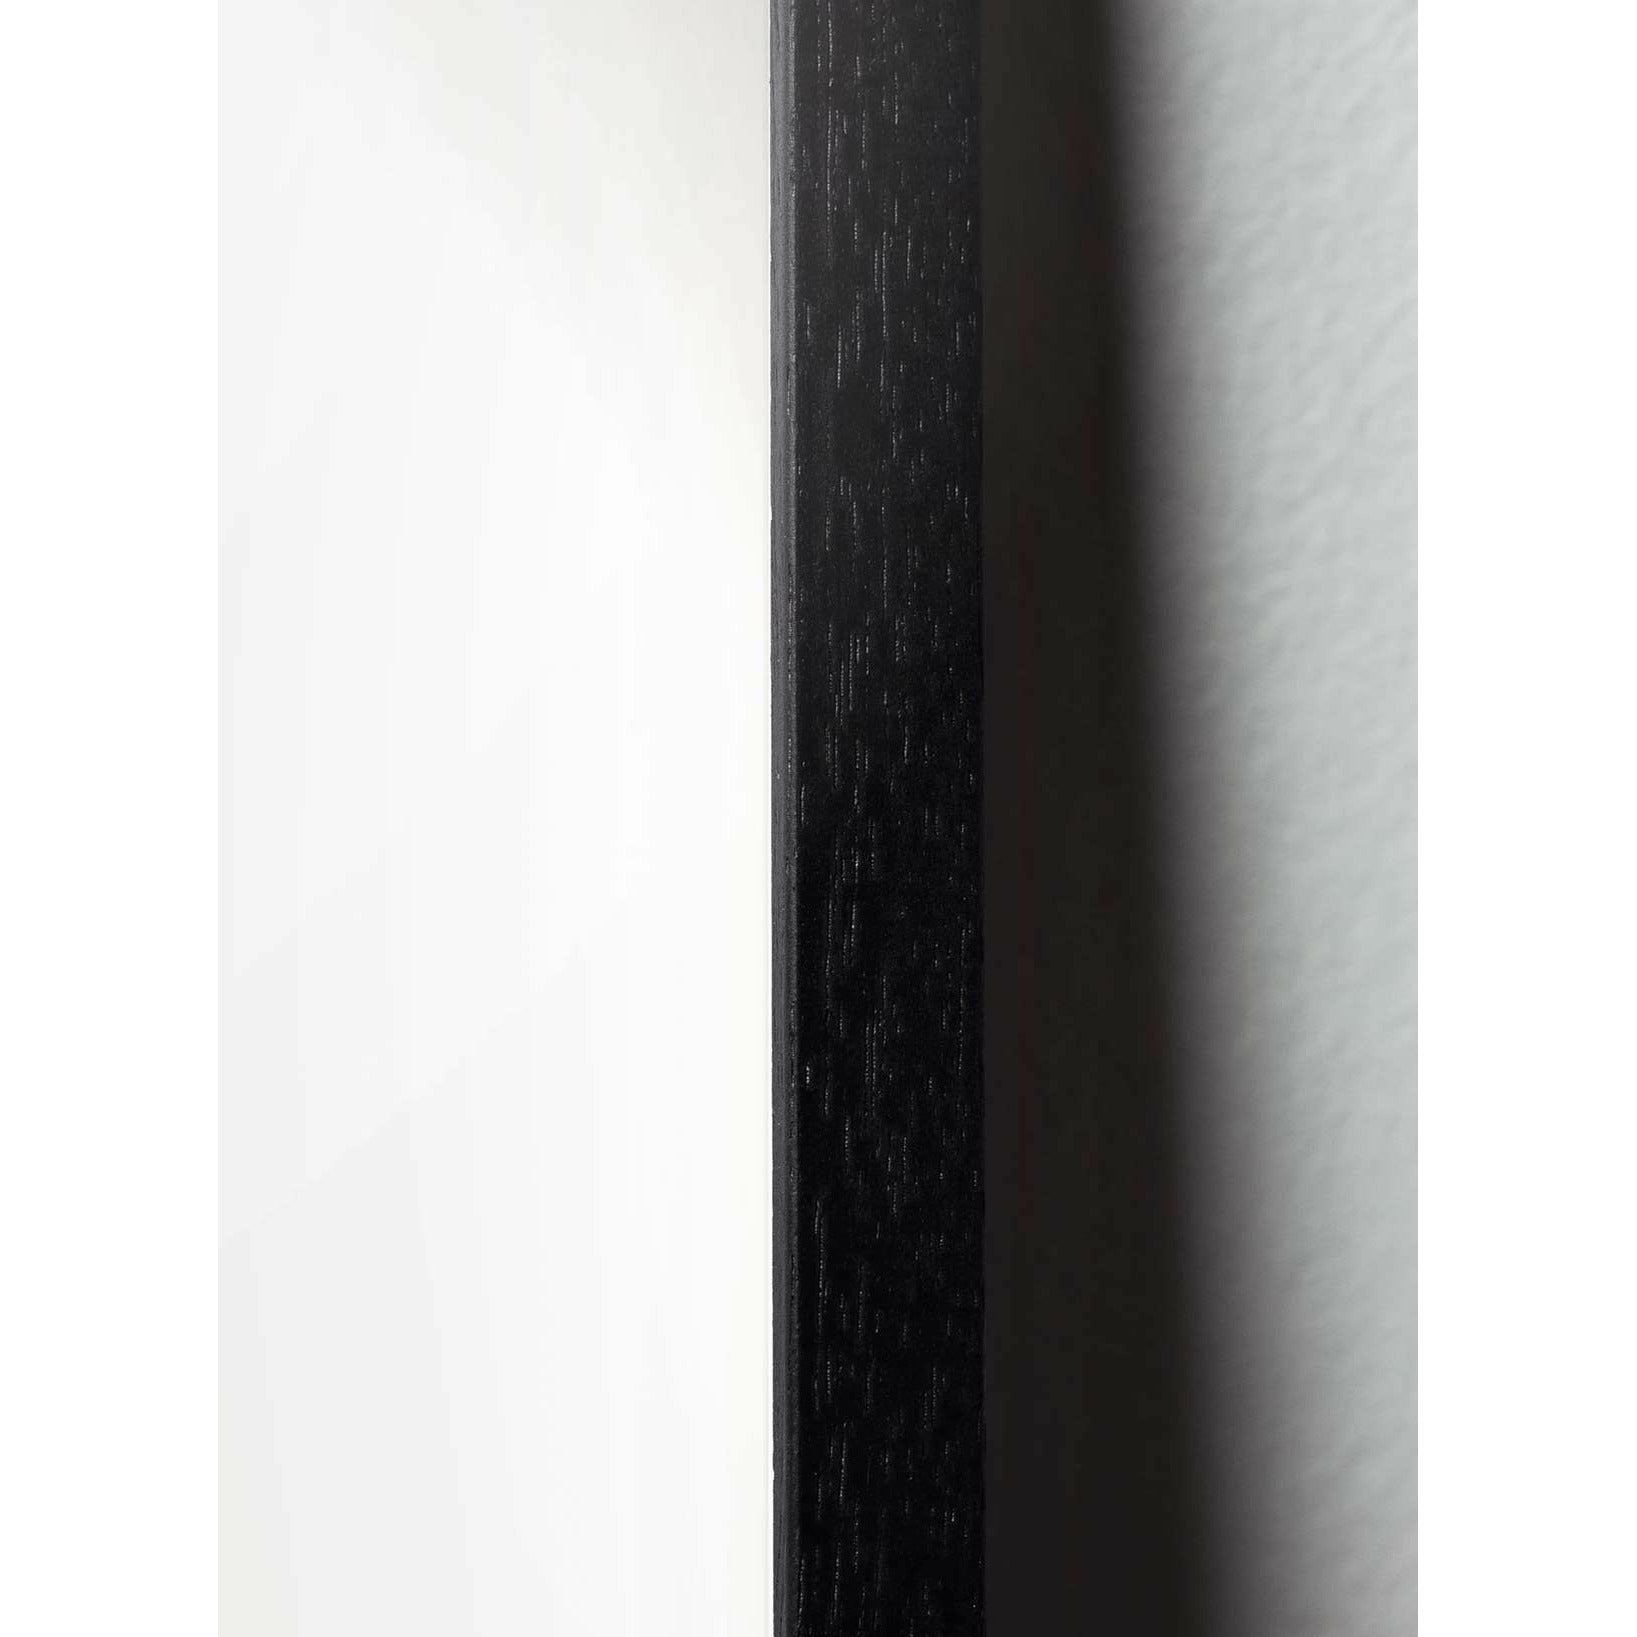 Plakát linie medvídka, rám v černém lakovaném dřevu 30x40 cm, modré pozadí